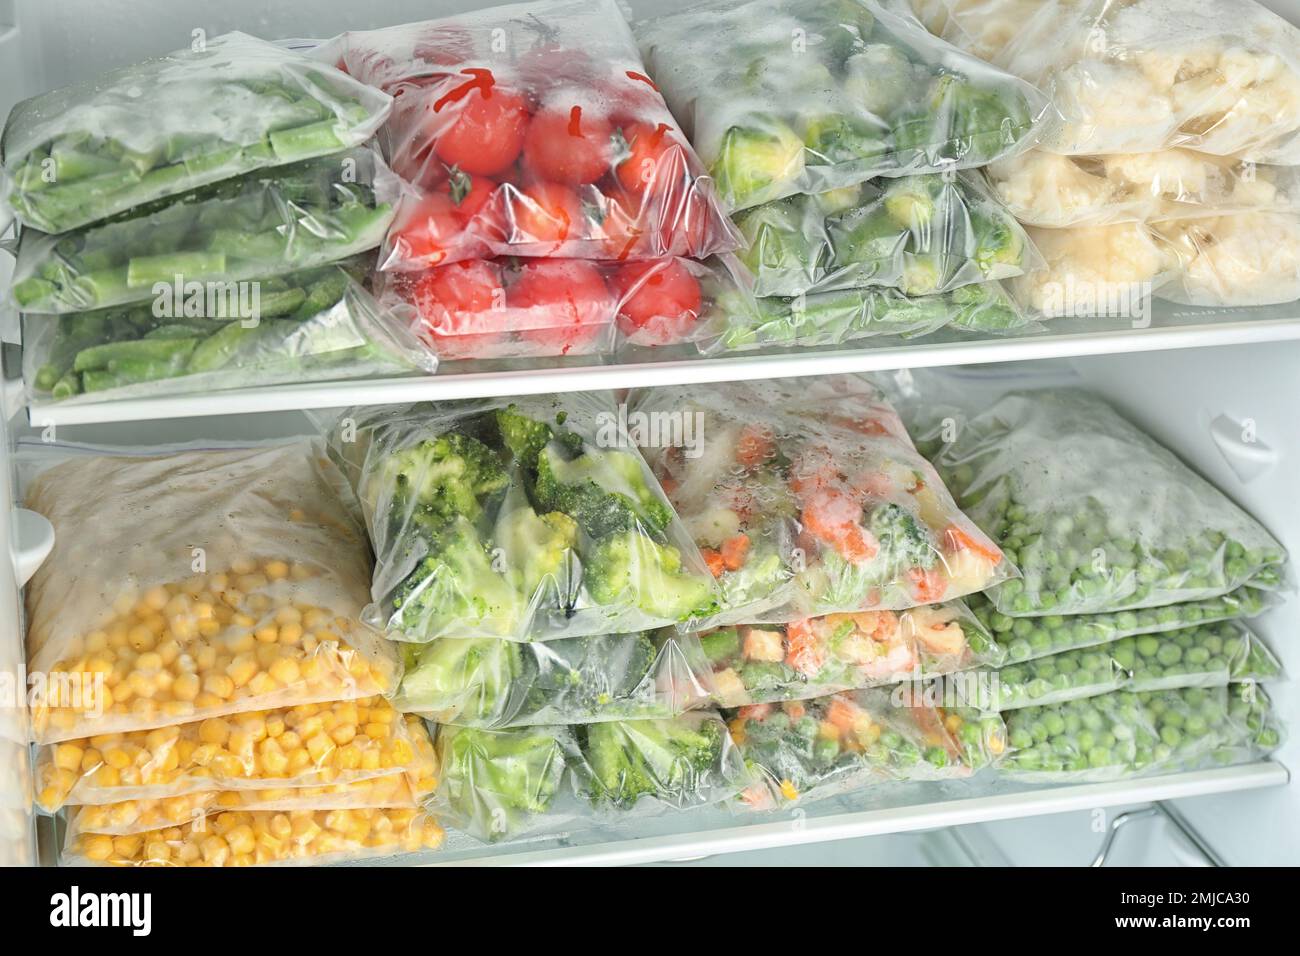 https://c8.alamy.com/compes/2mjca30/bolsas-de-plastico-con-diferentes-verduras-congeladas-en-el-refrigerador-2mjca30.jpg